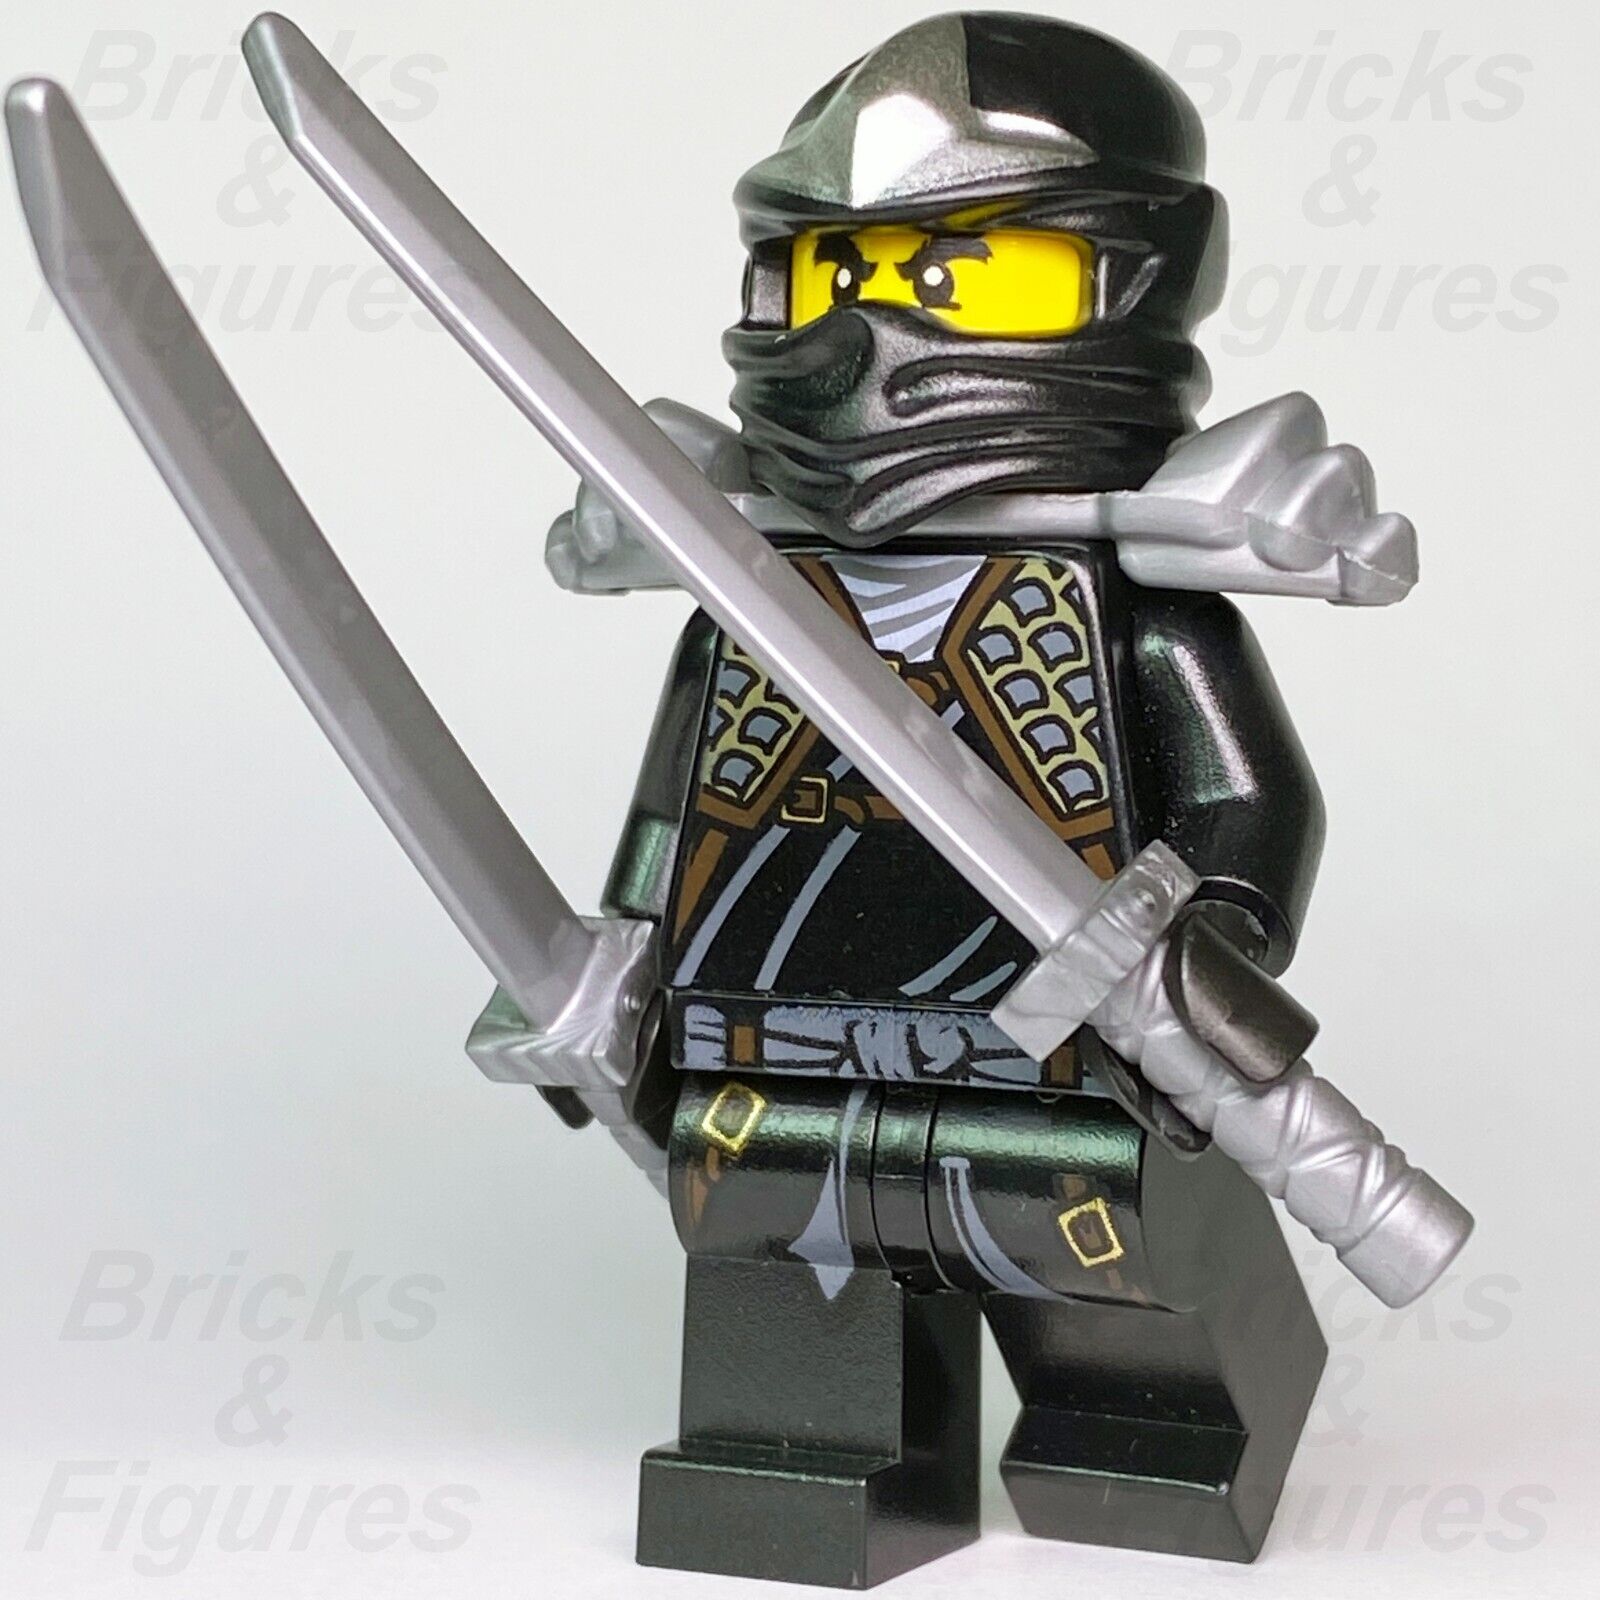 NEW Lego Ninjago GREEN NINJA MINIFIG - Lloyd ZX Minifigure w/2 Gold Swords  -9450